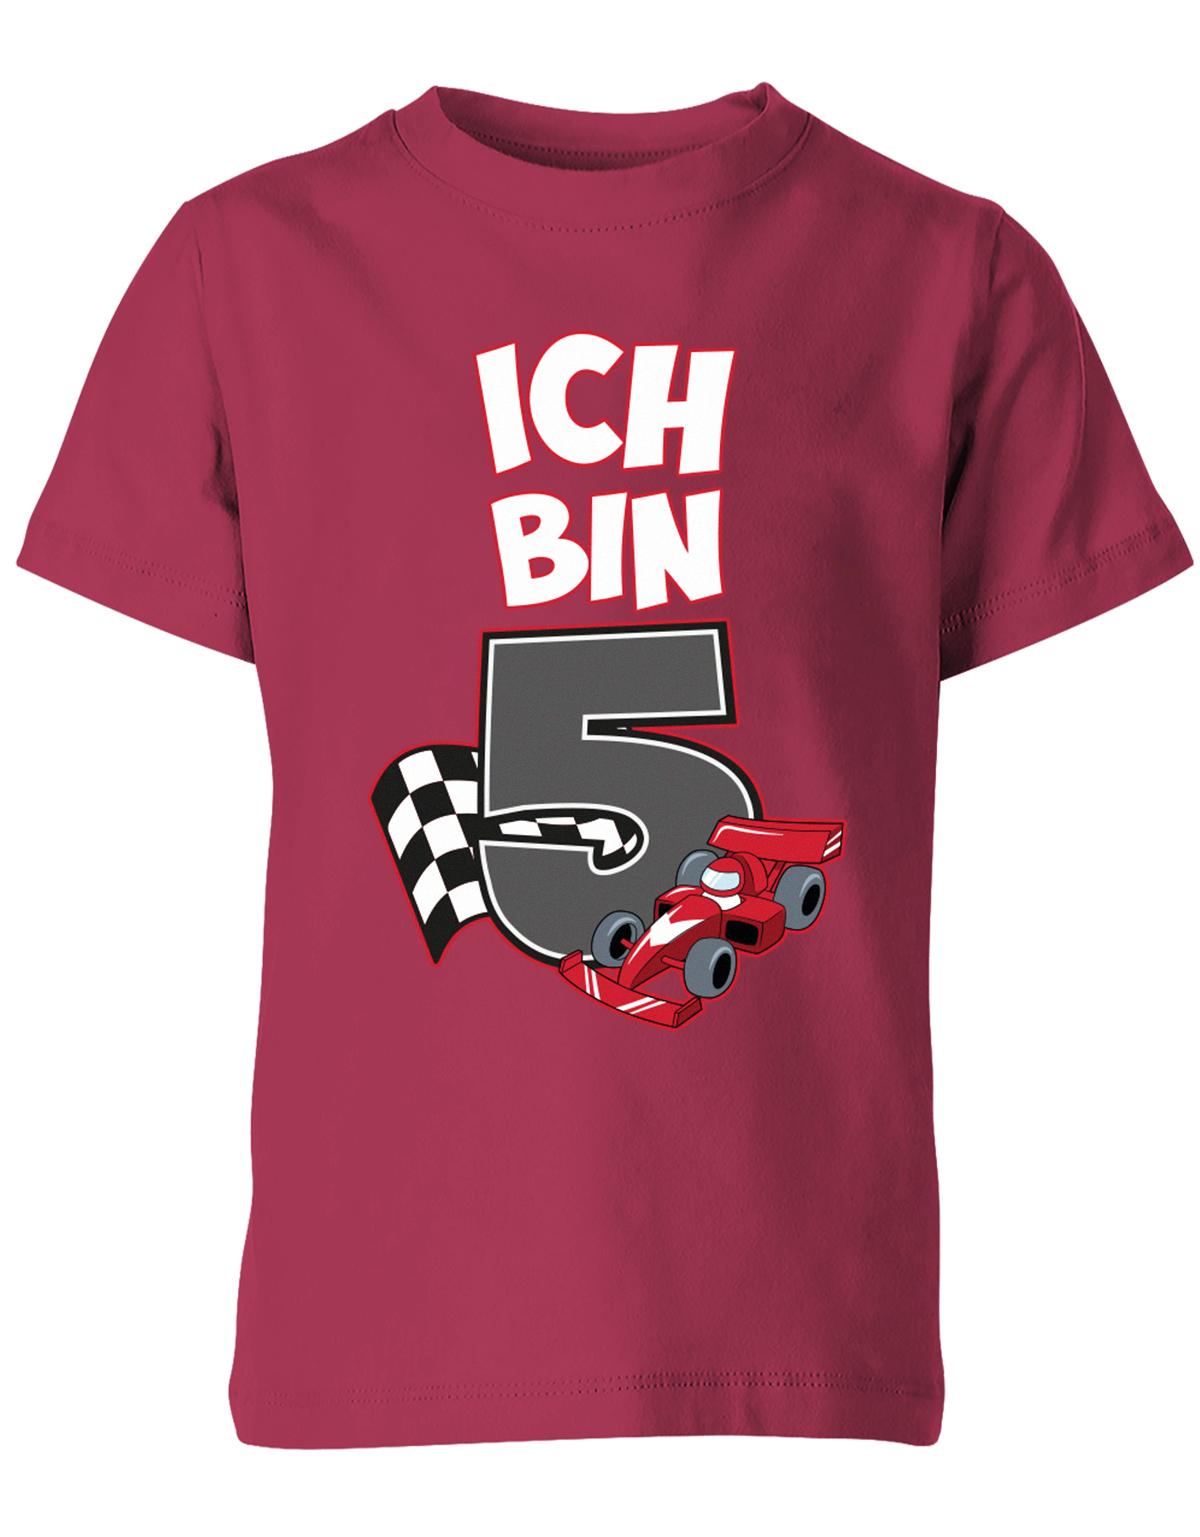 ich-bin-5-autorennen-rennwagen-geburtstag-rennfahrer-kinder-shirt-sorbet